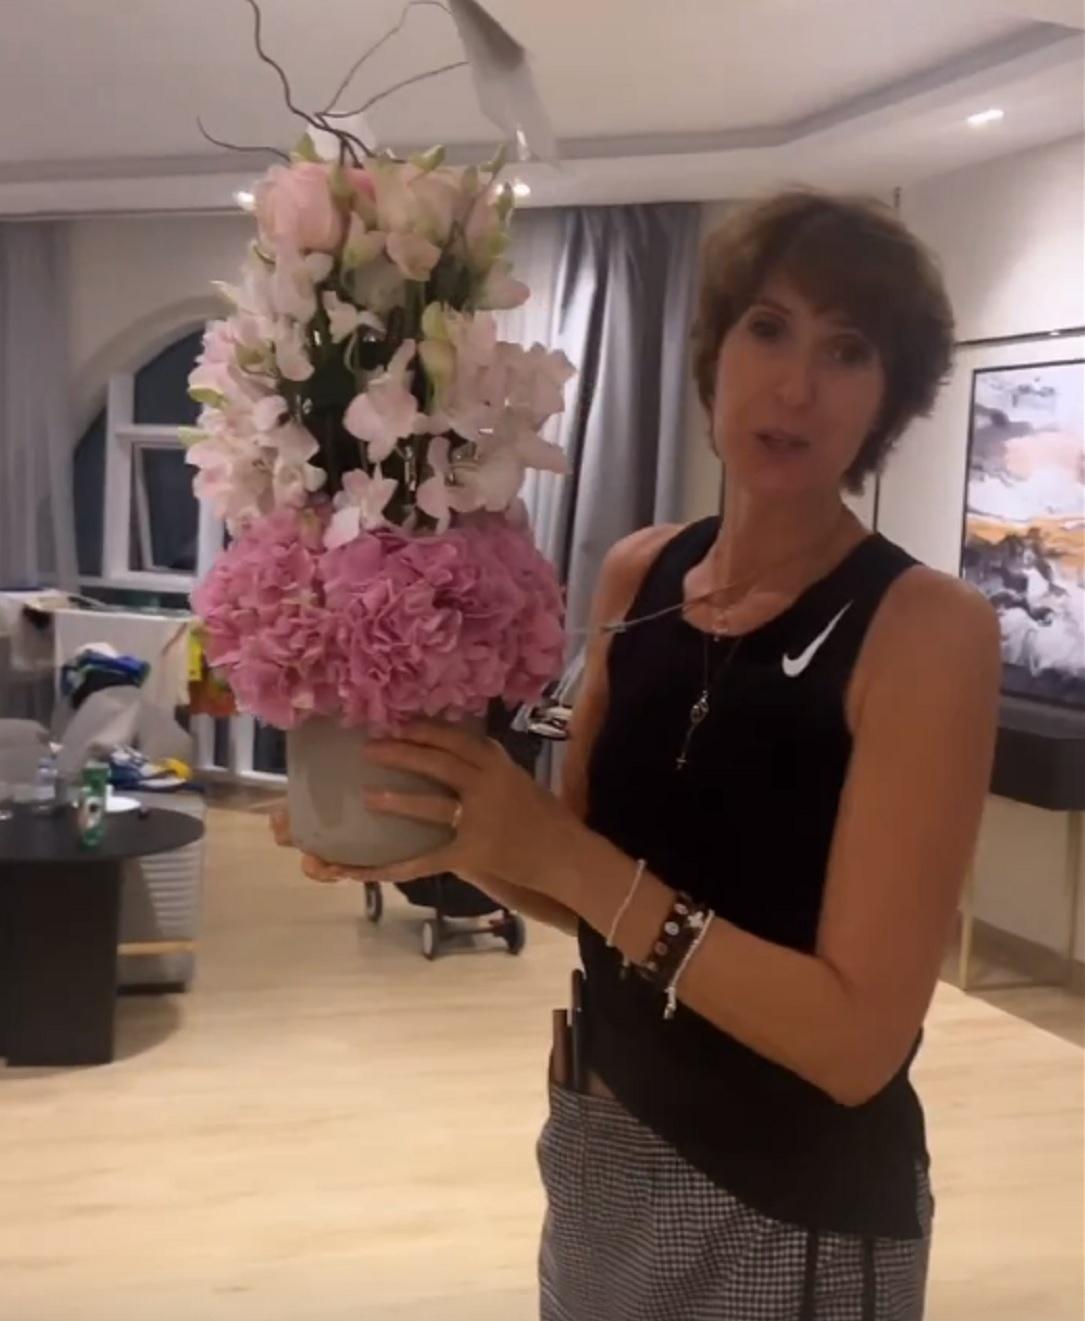 Tite Comemorando 38 anos de casada, esposa recebe flores no Qatar